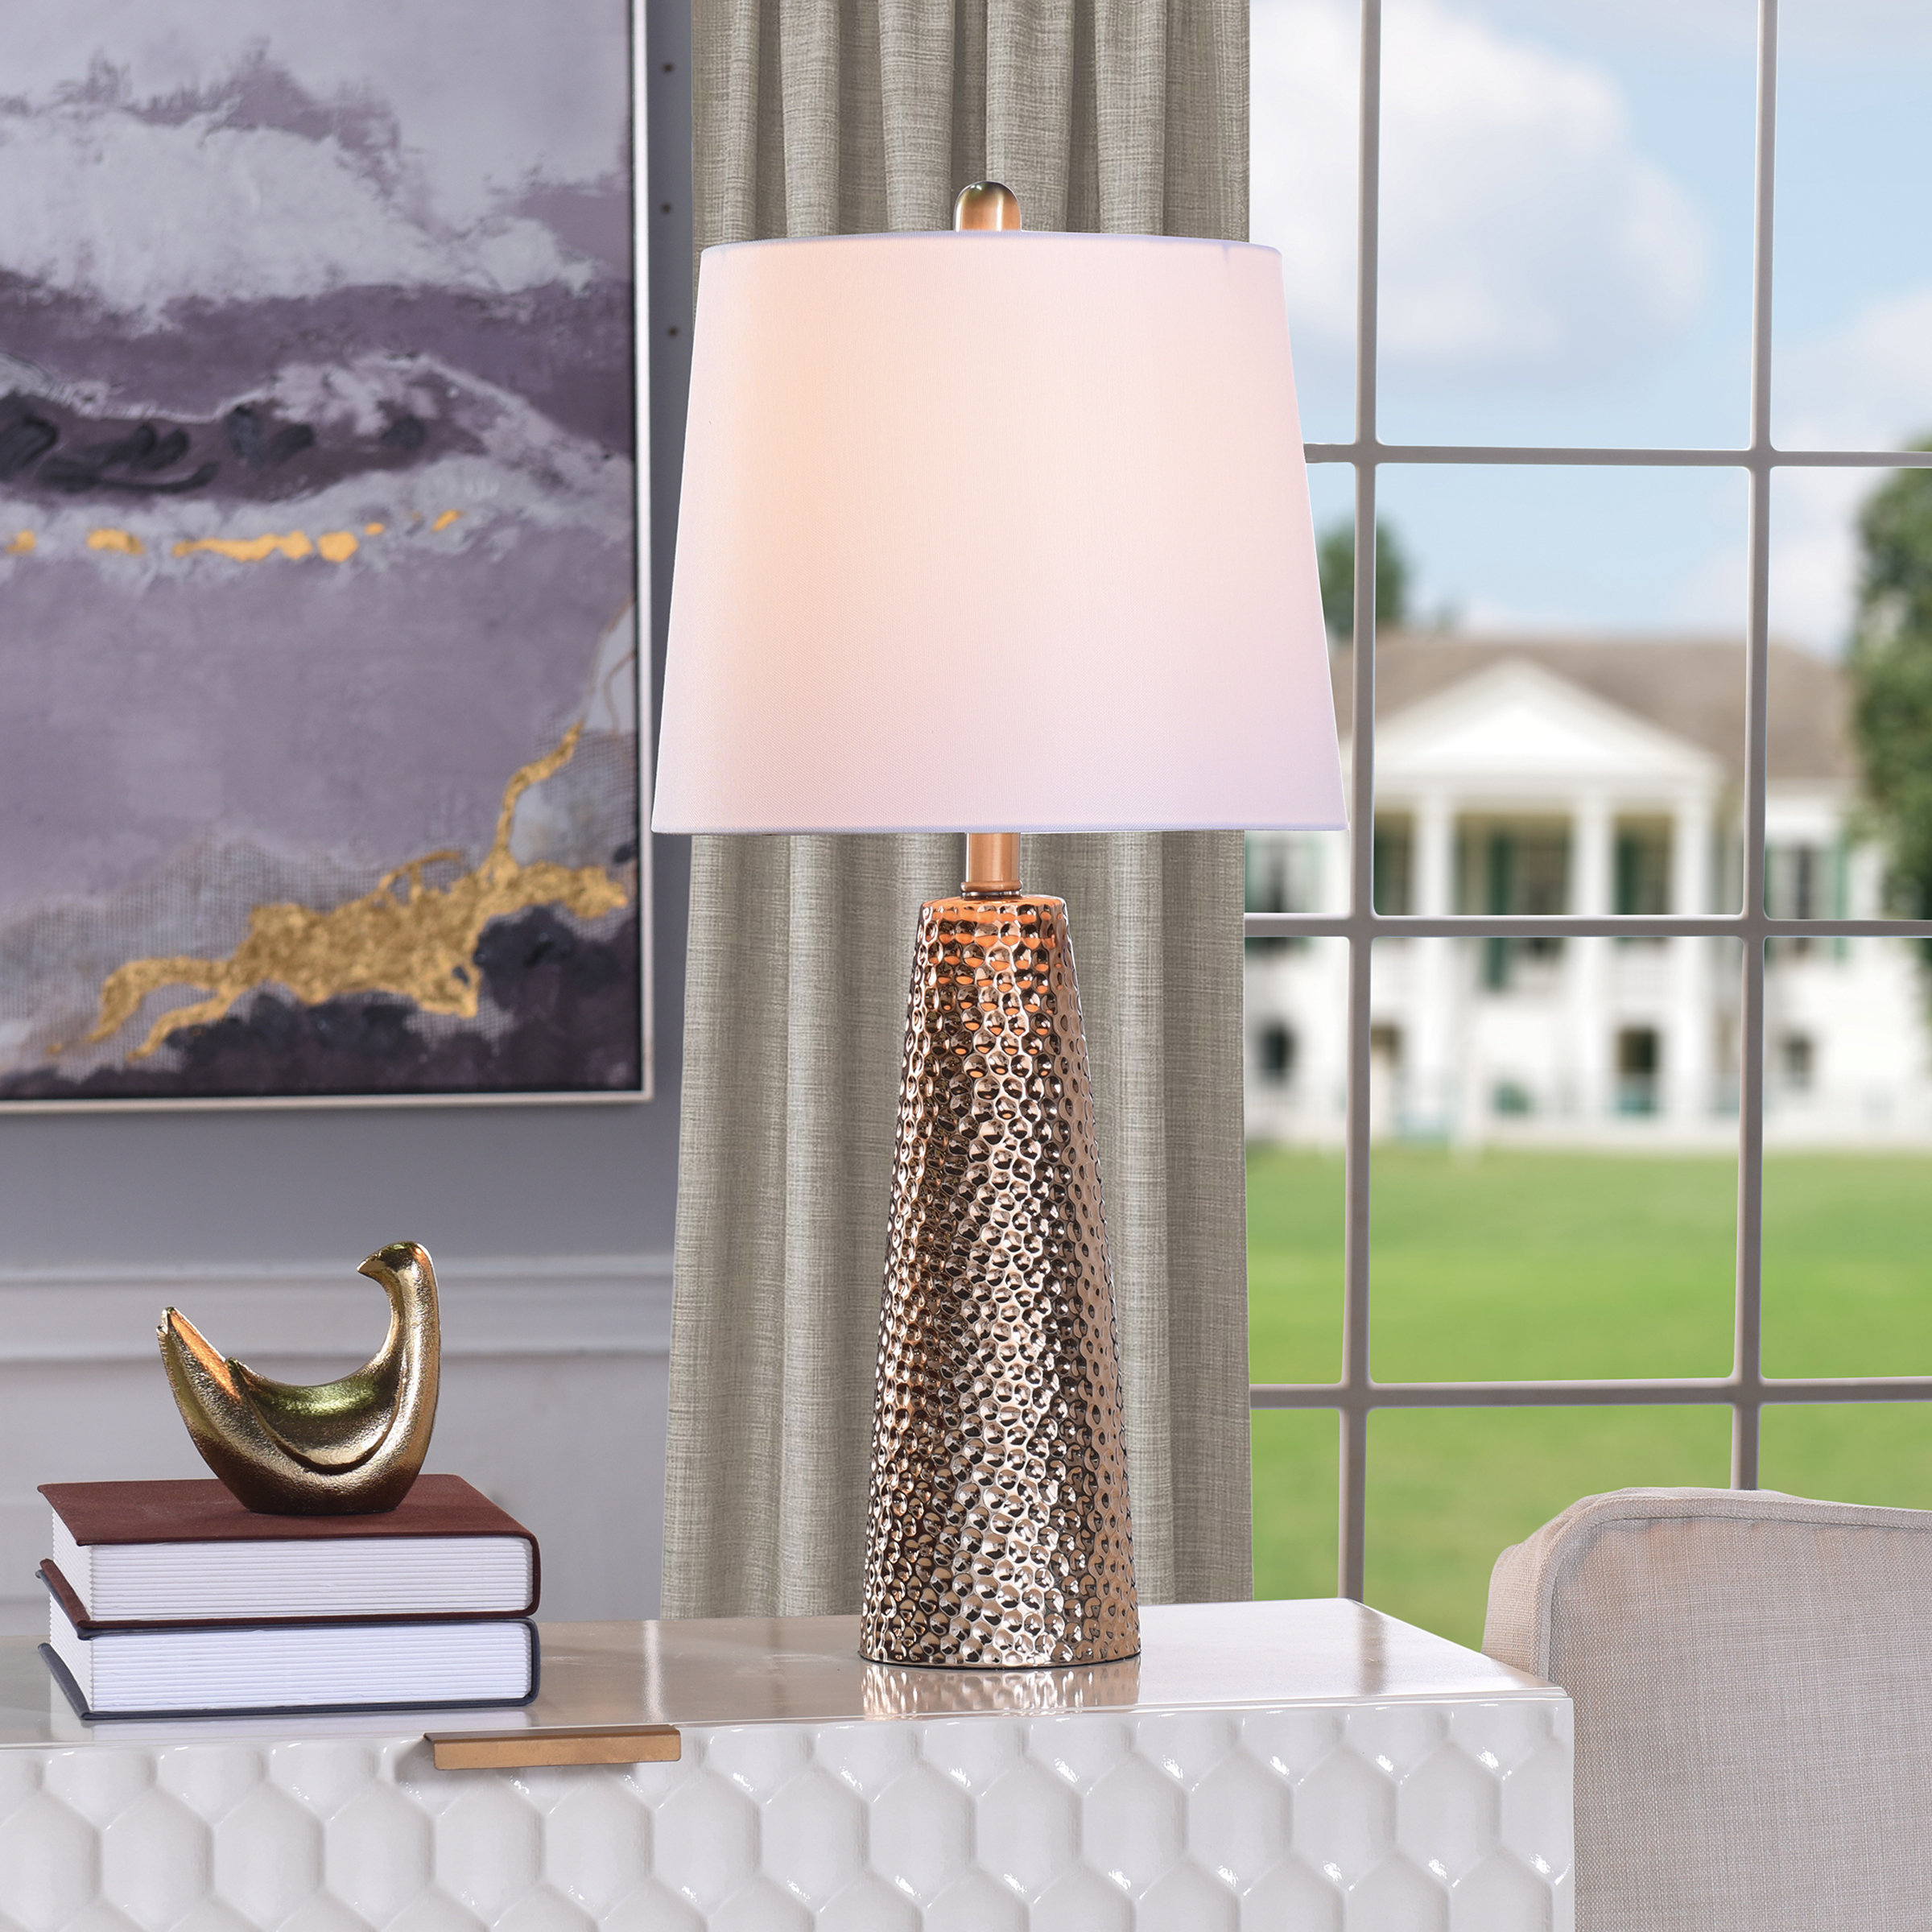 Parfait Table Lamp - Clear/Antique Brass